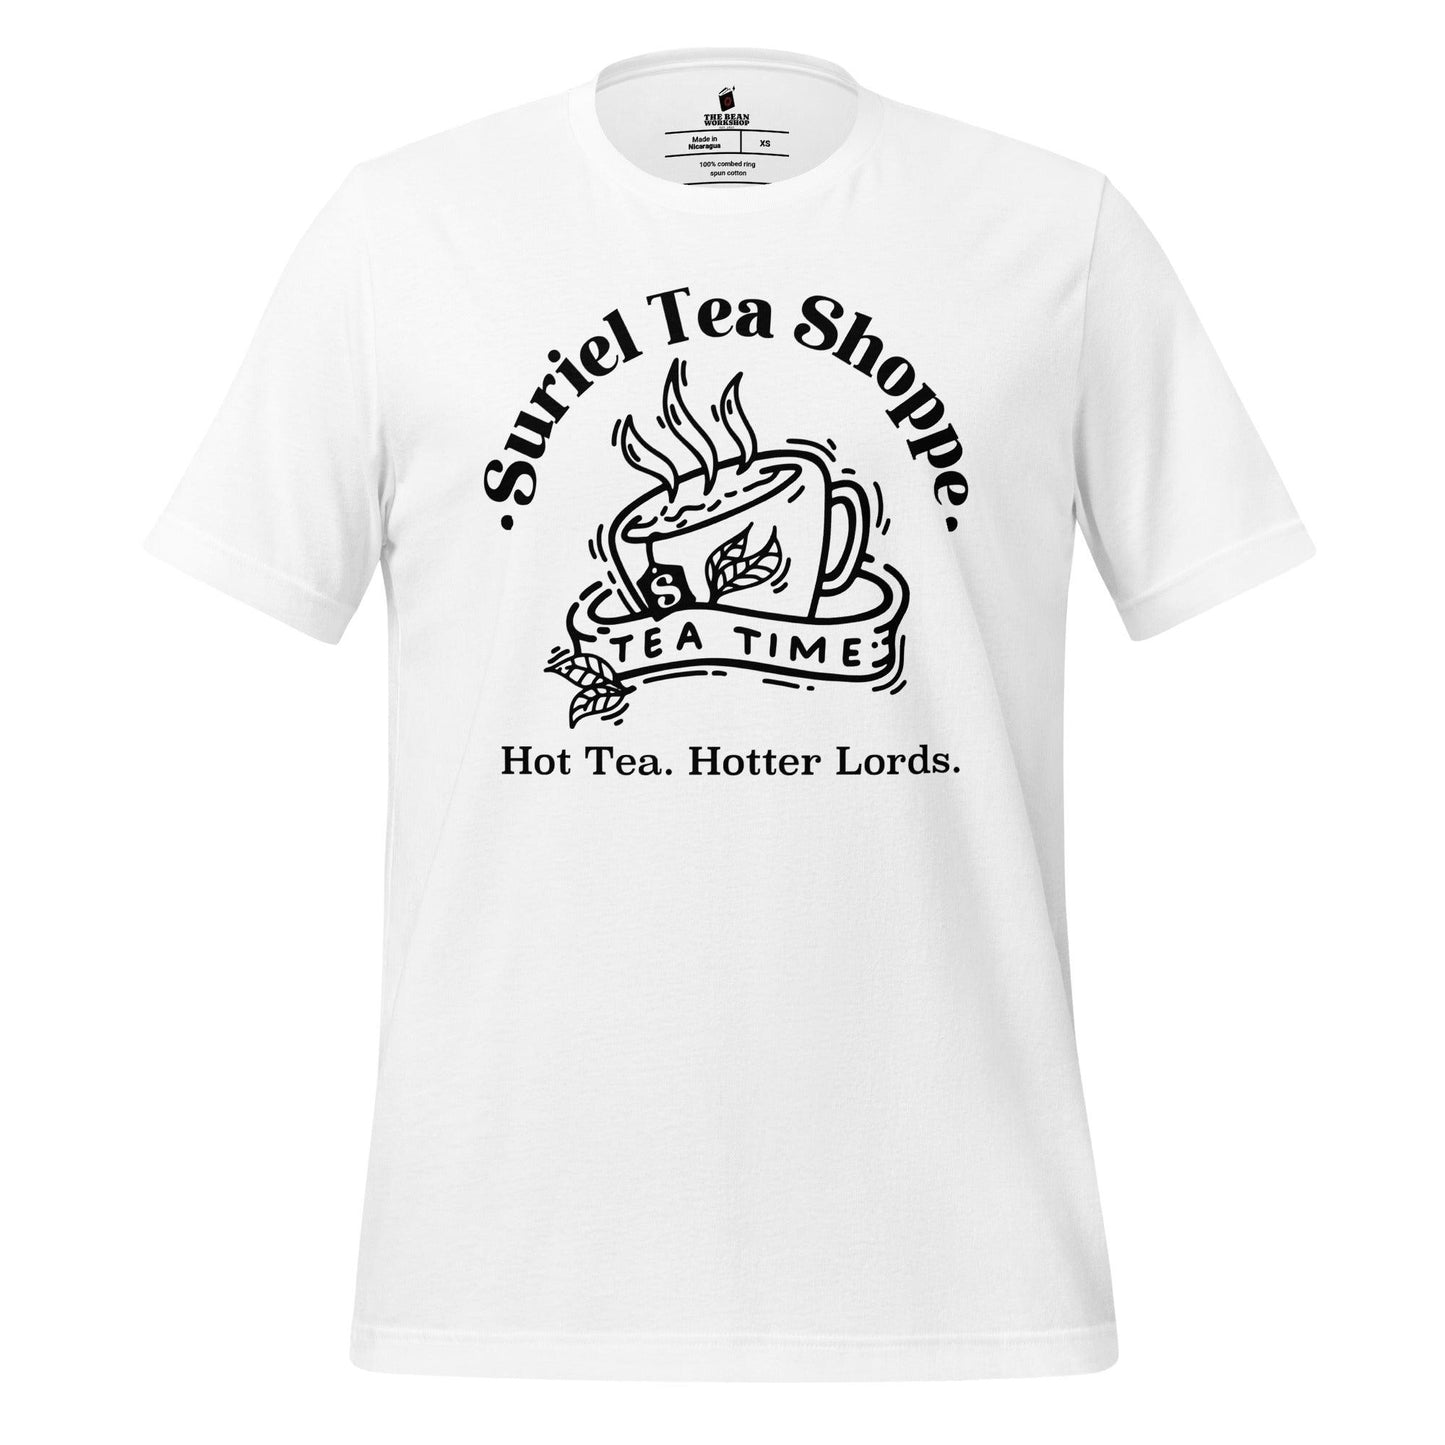 Suriel Tea Shoppe T-shirt - The Bean Workshop - a court of thorns and roses, acotar, feyre archeron, rhysand, sarah j. maas, t-shirt